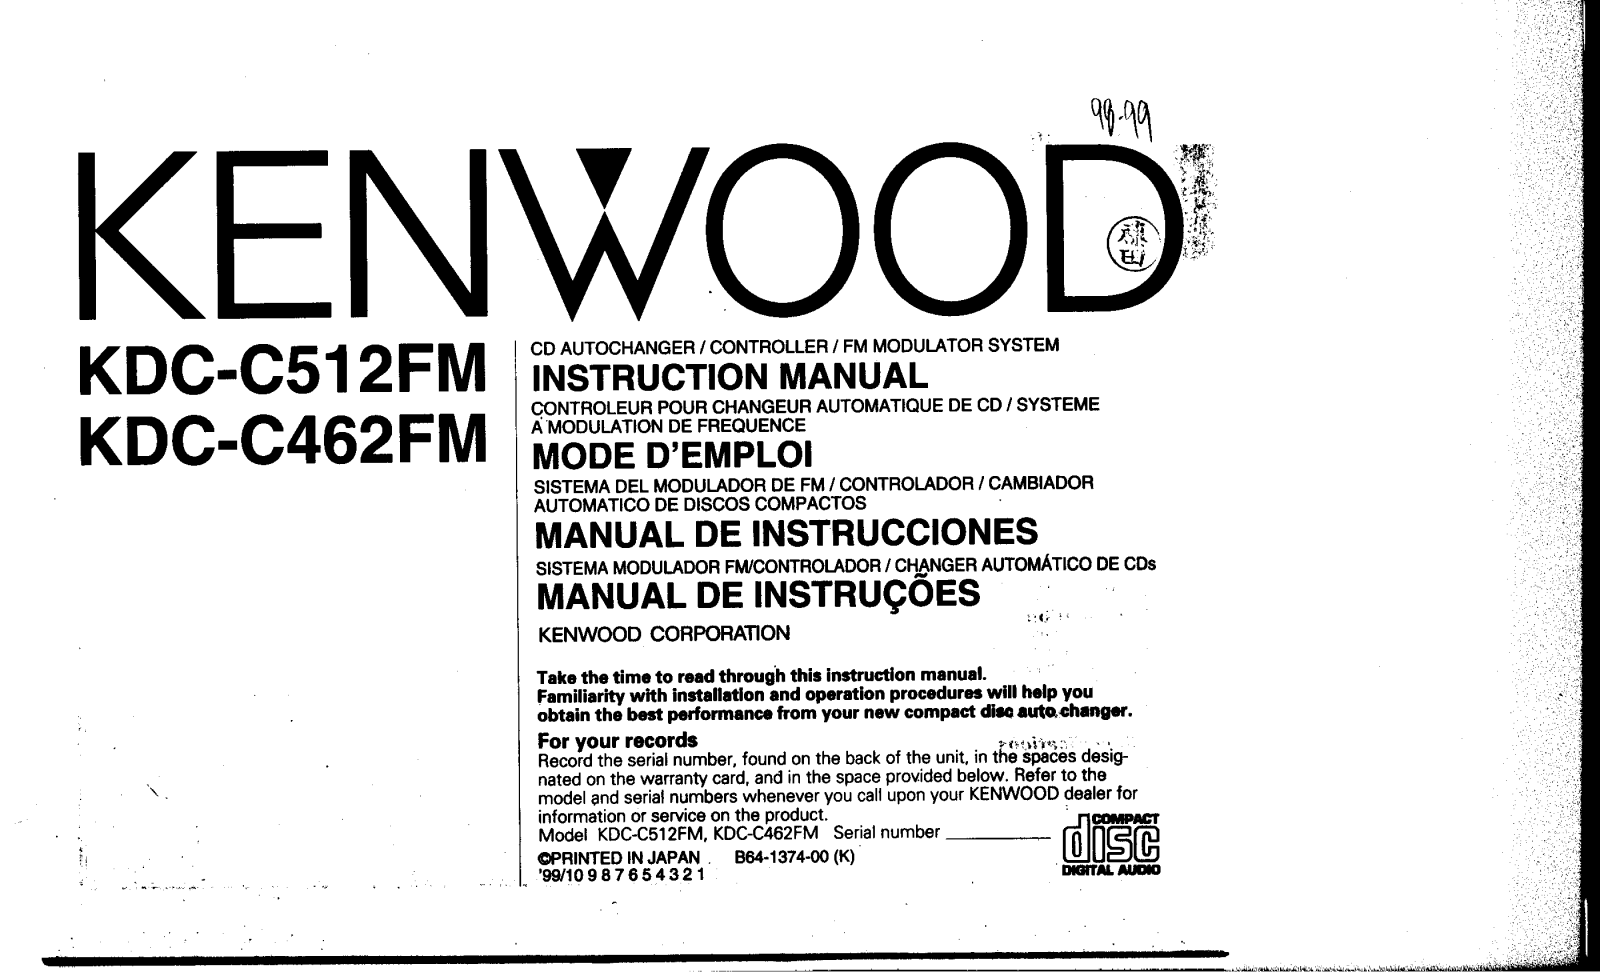 Kenwood KDC-C512, KDC-C462FM Owner's Manual